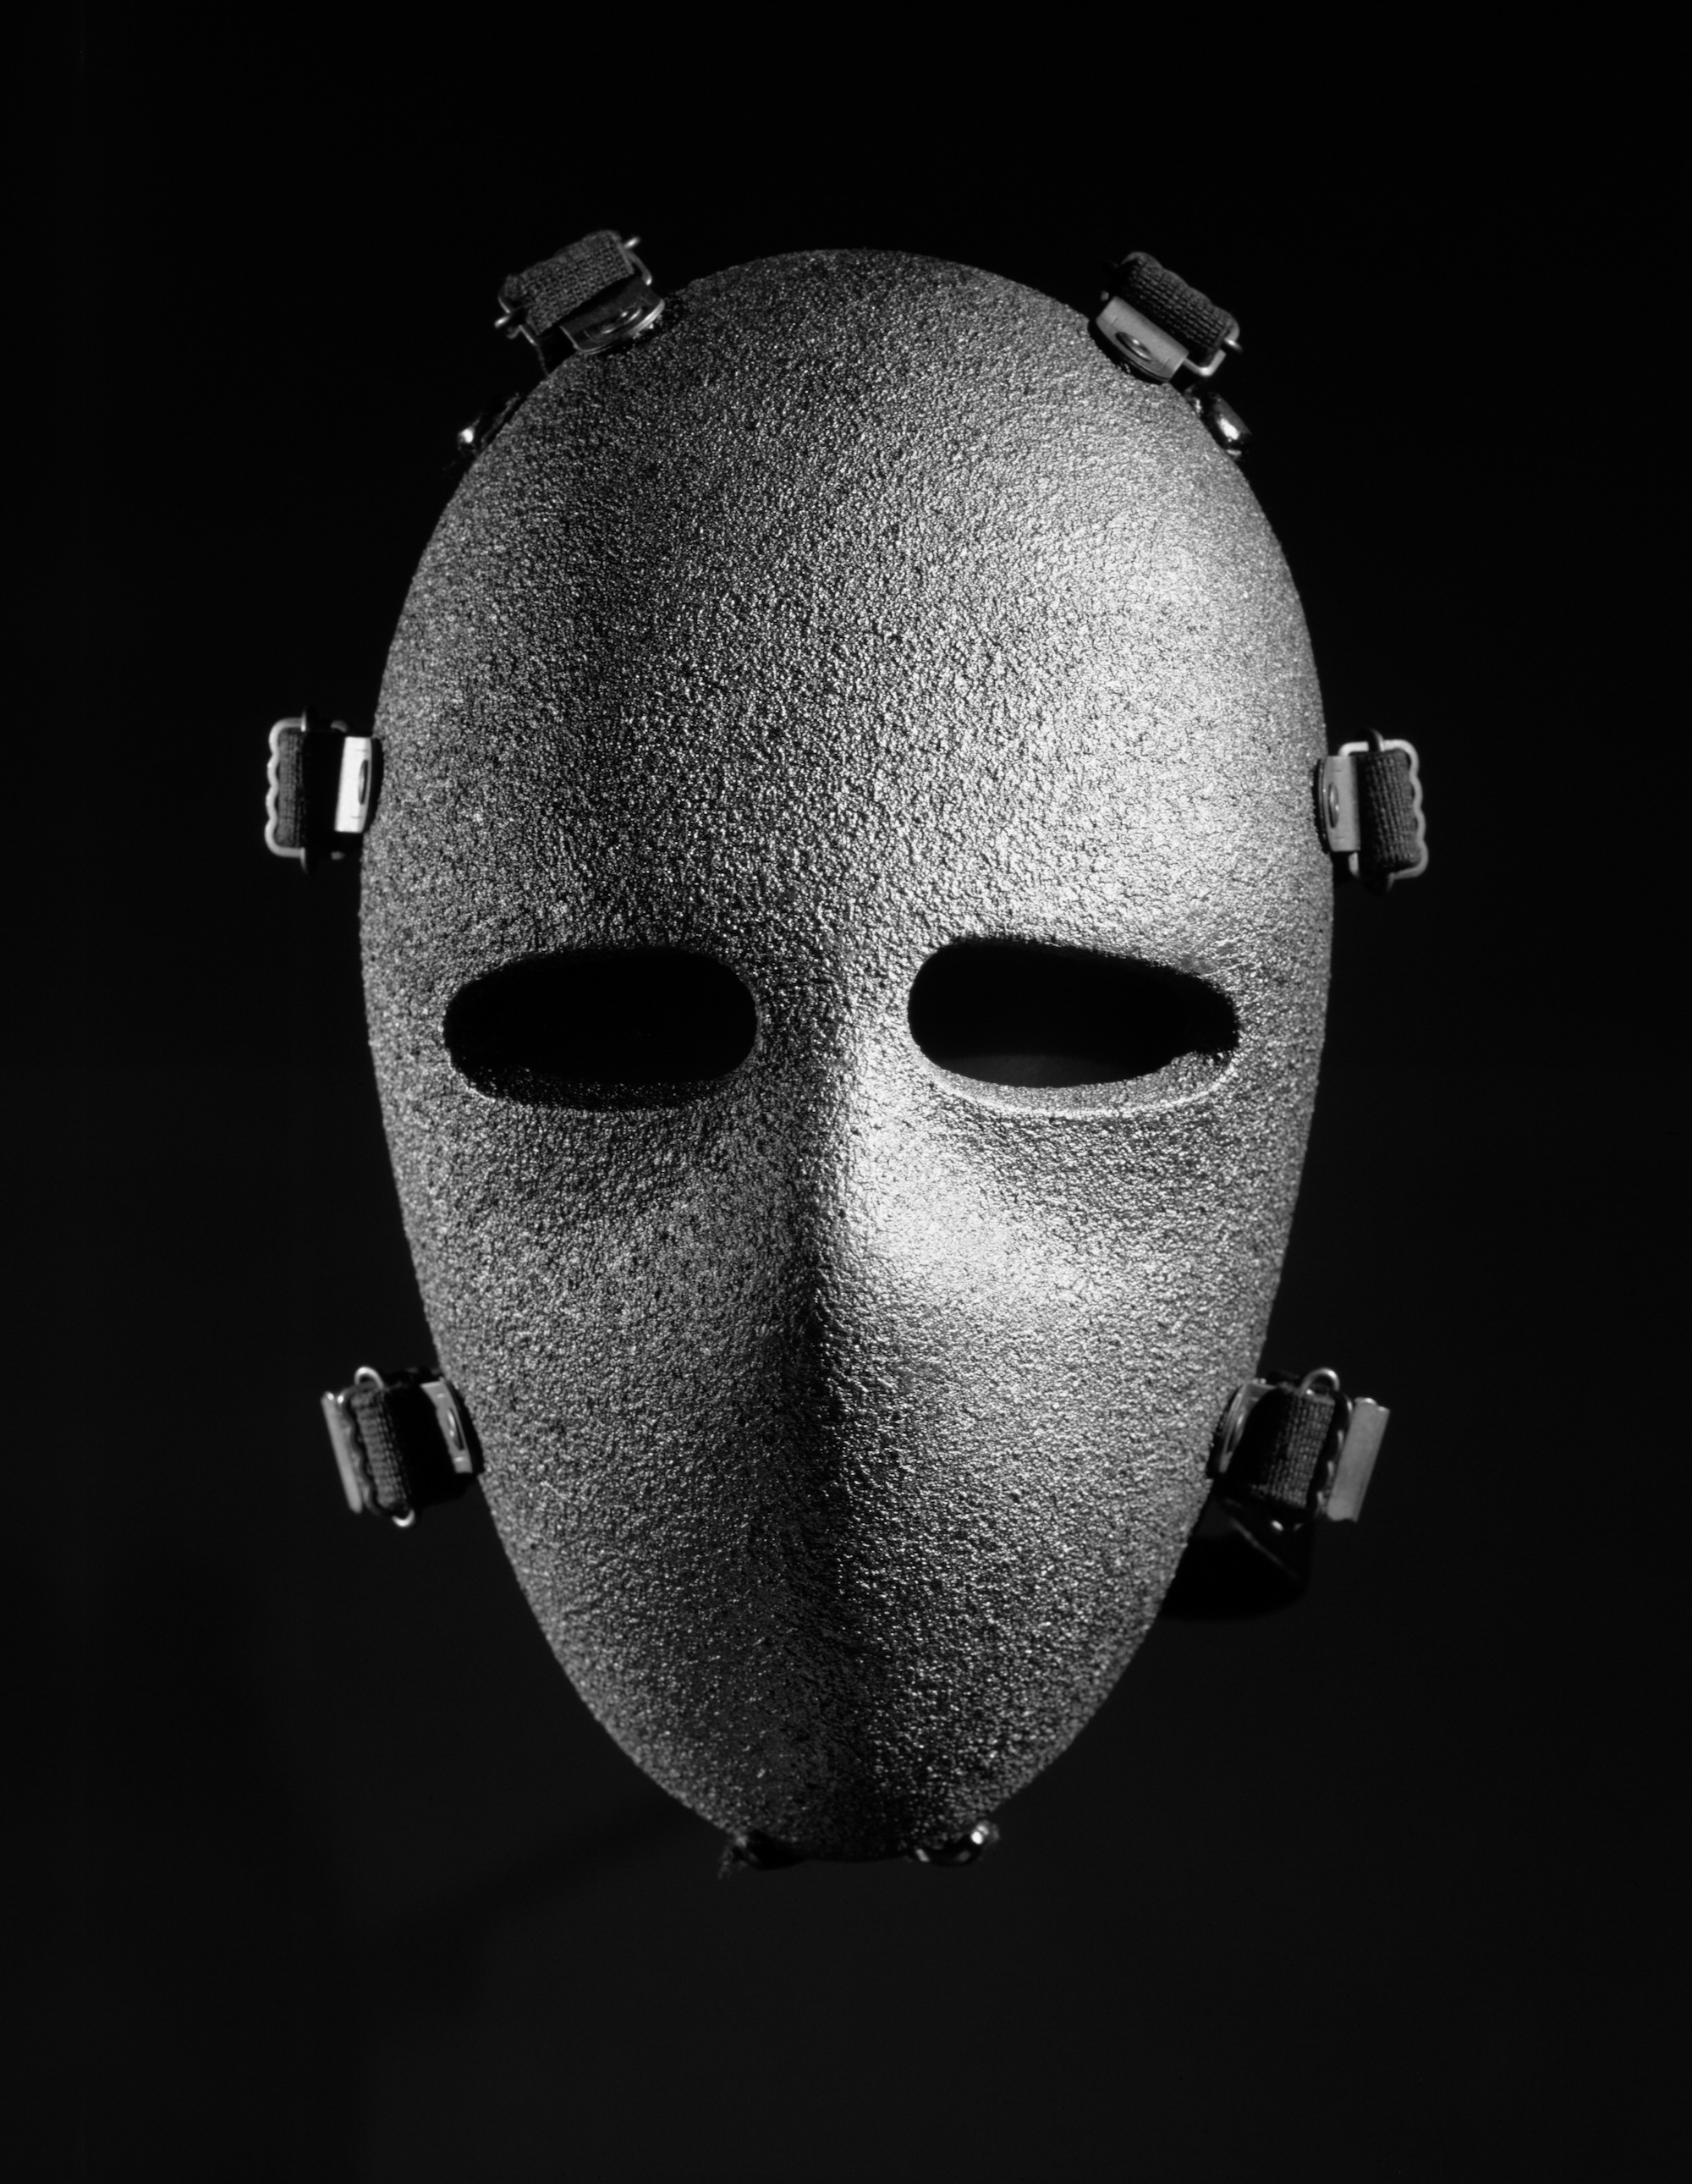 Bullet-resistant face mask, 1989